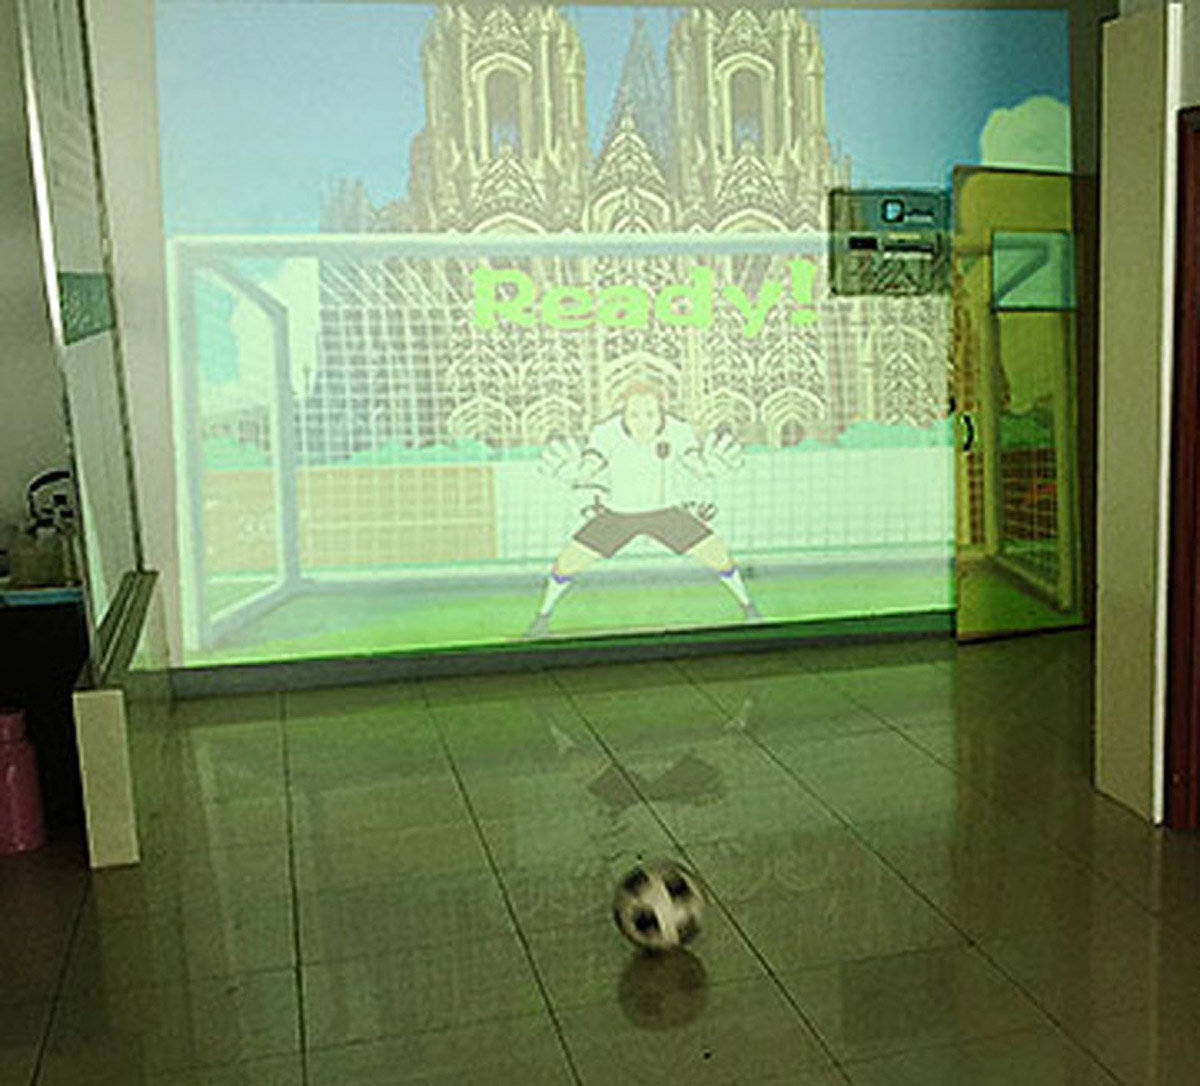 球幕影院使用体感识别技术的虚拟足球射门.jpg